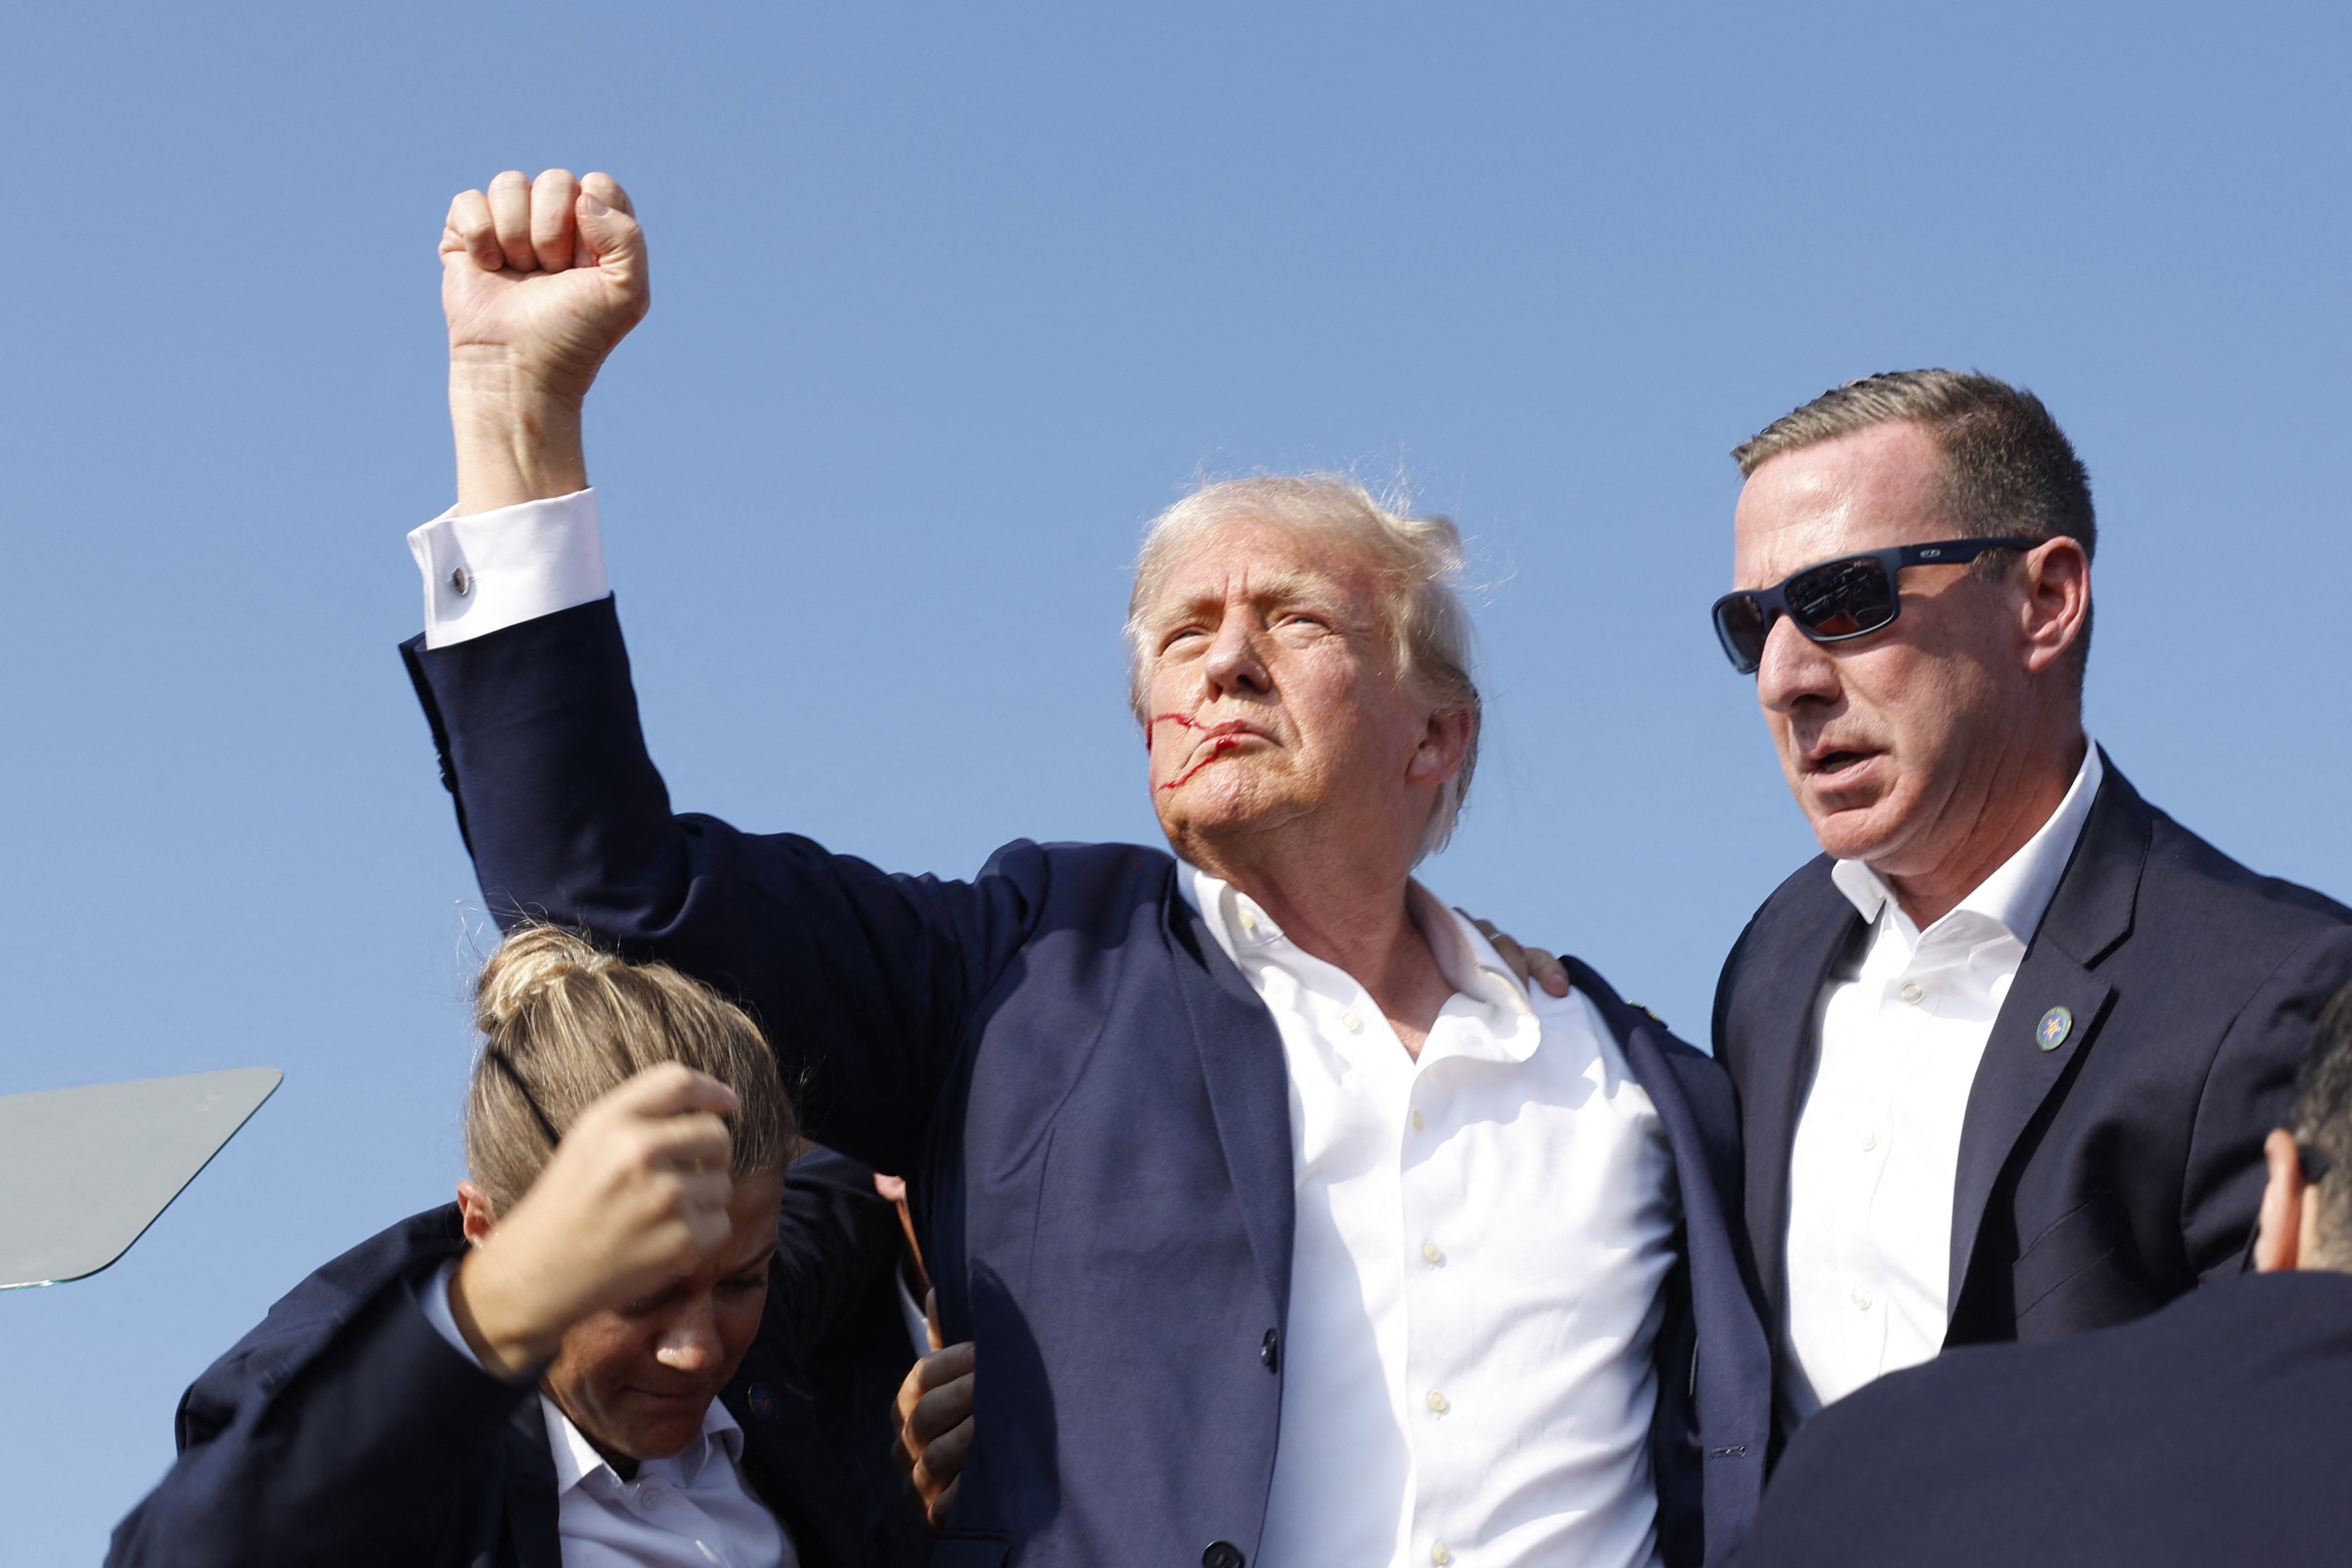 Galeria de fotos de FOTOS: Trump é ferido na cabeça durante comício na Pensilvânia